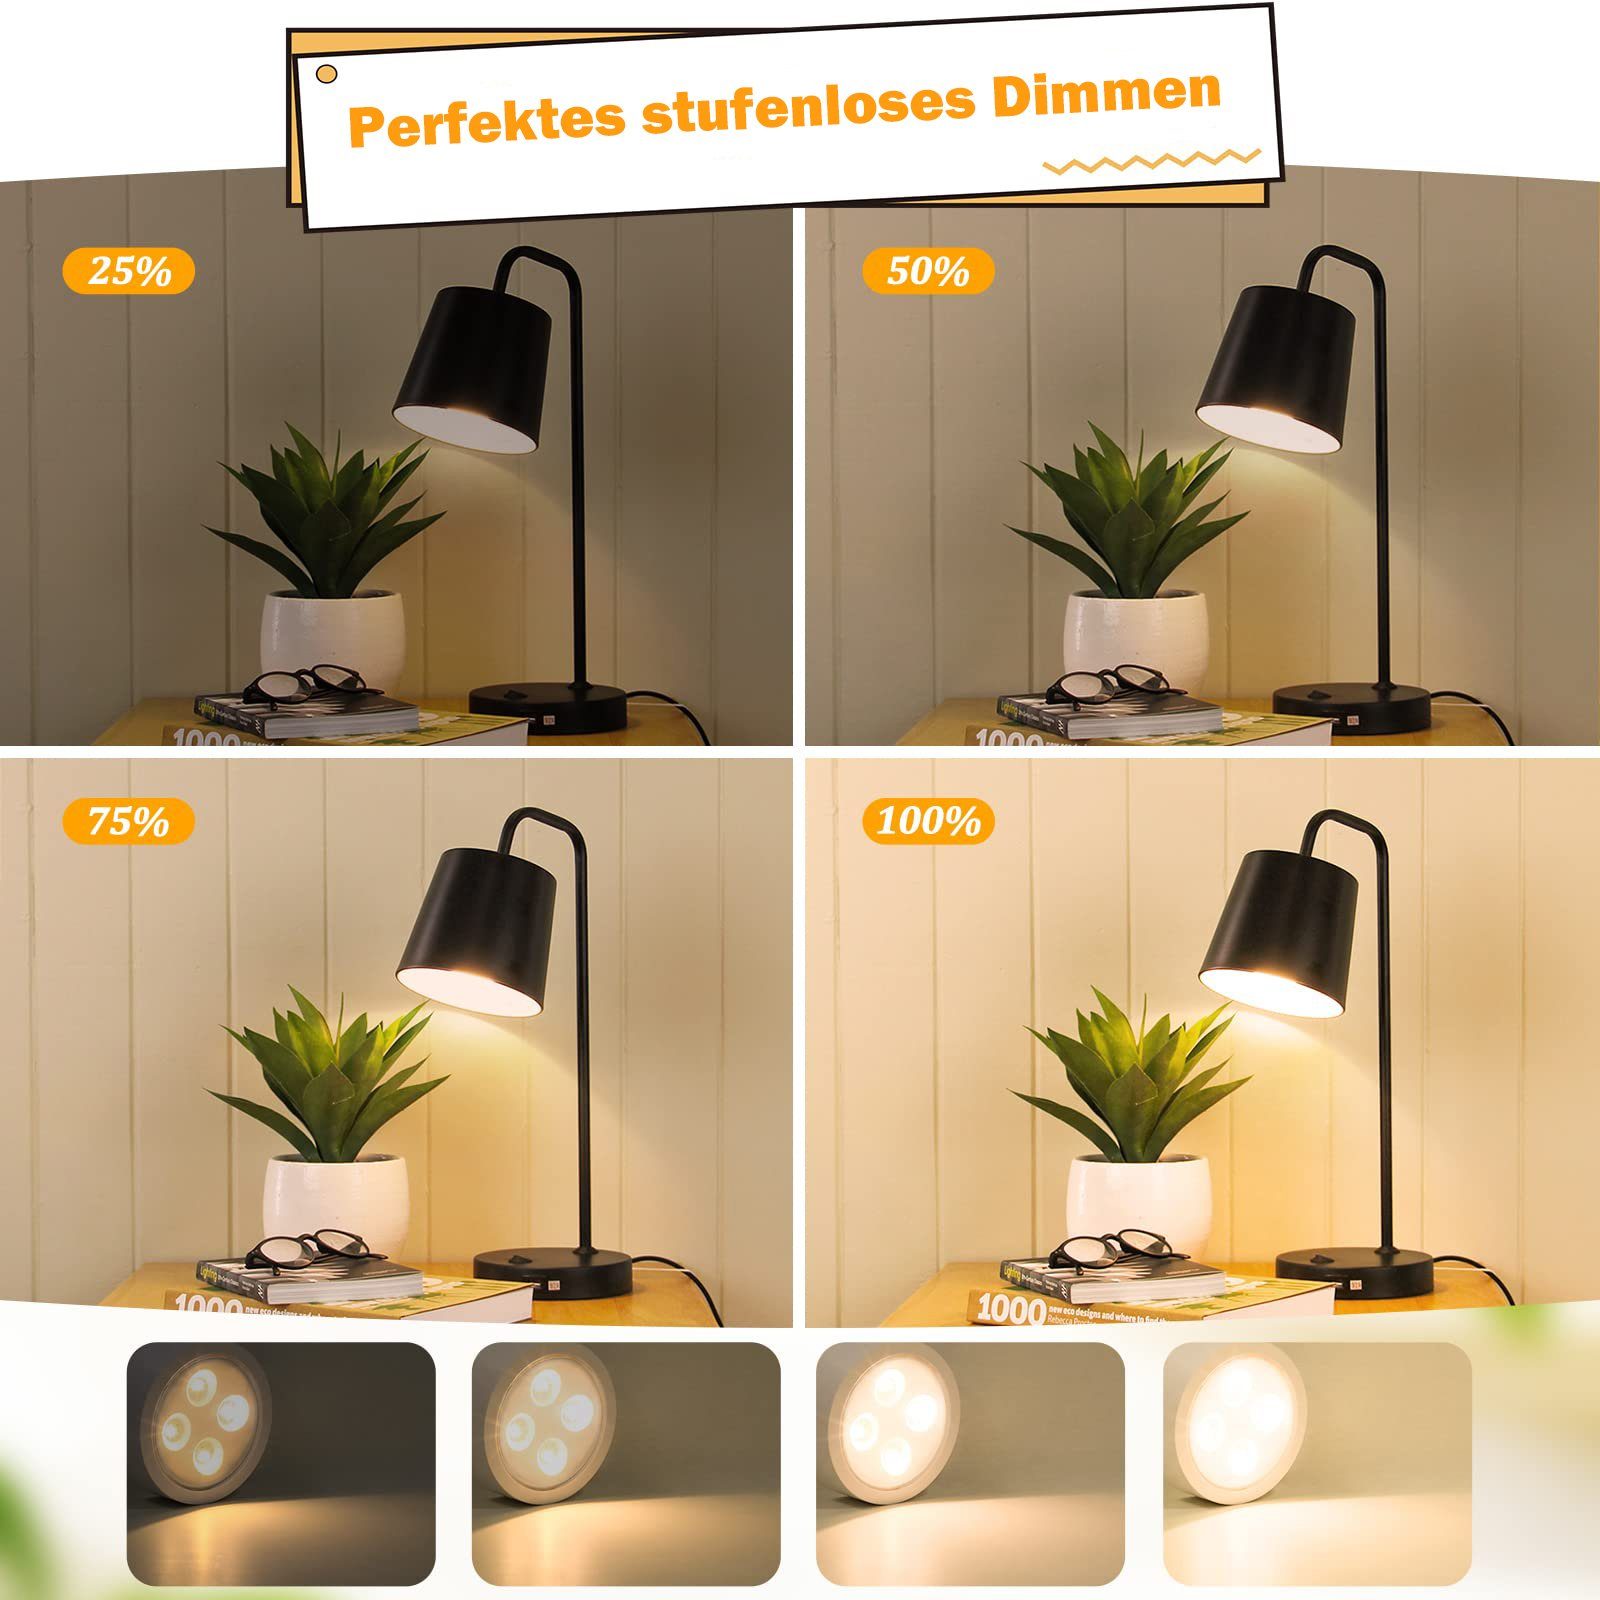 Sunicol LED Unterbauleuchte RGB Batterielampe, Dimmbar 13 Fernsteuerung, Spot, Küche Touch Glasboden Weiß Farben, Schrank Vitrinenbeleuchtung Nachtlicht mit Sensor